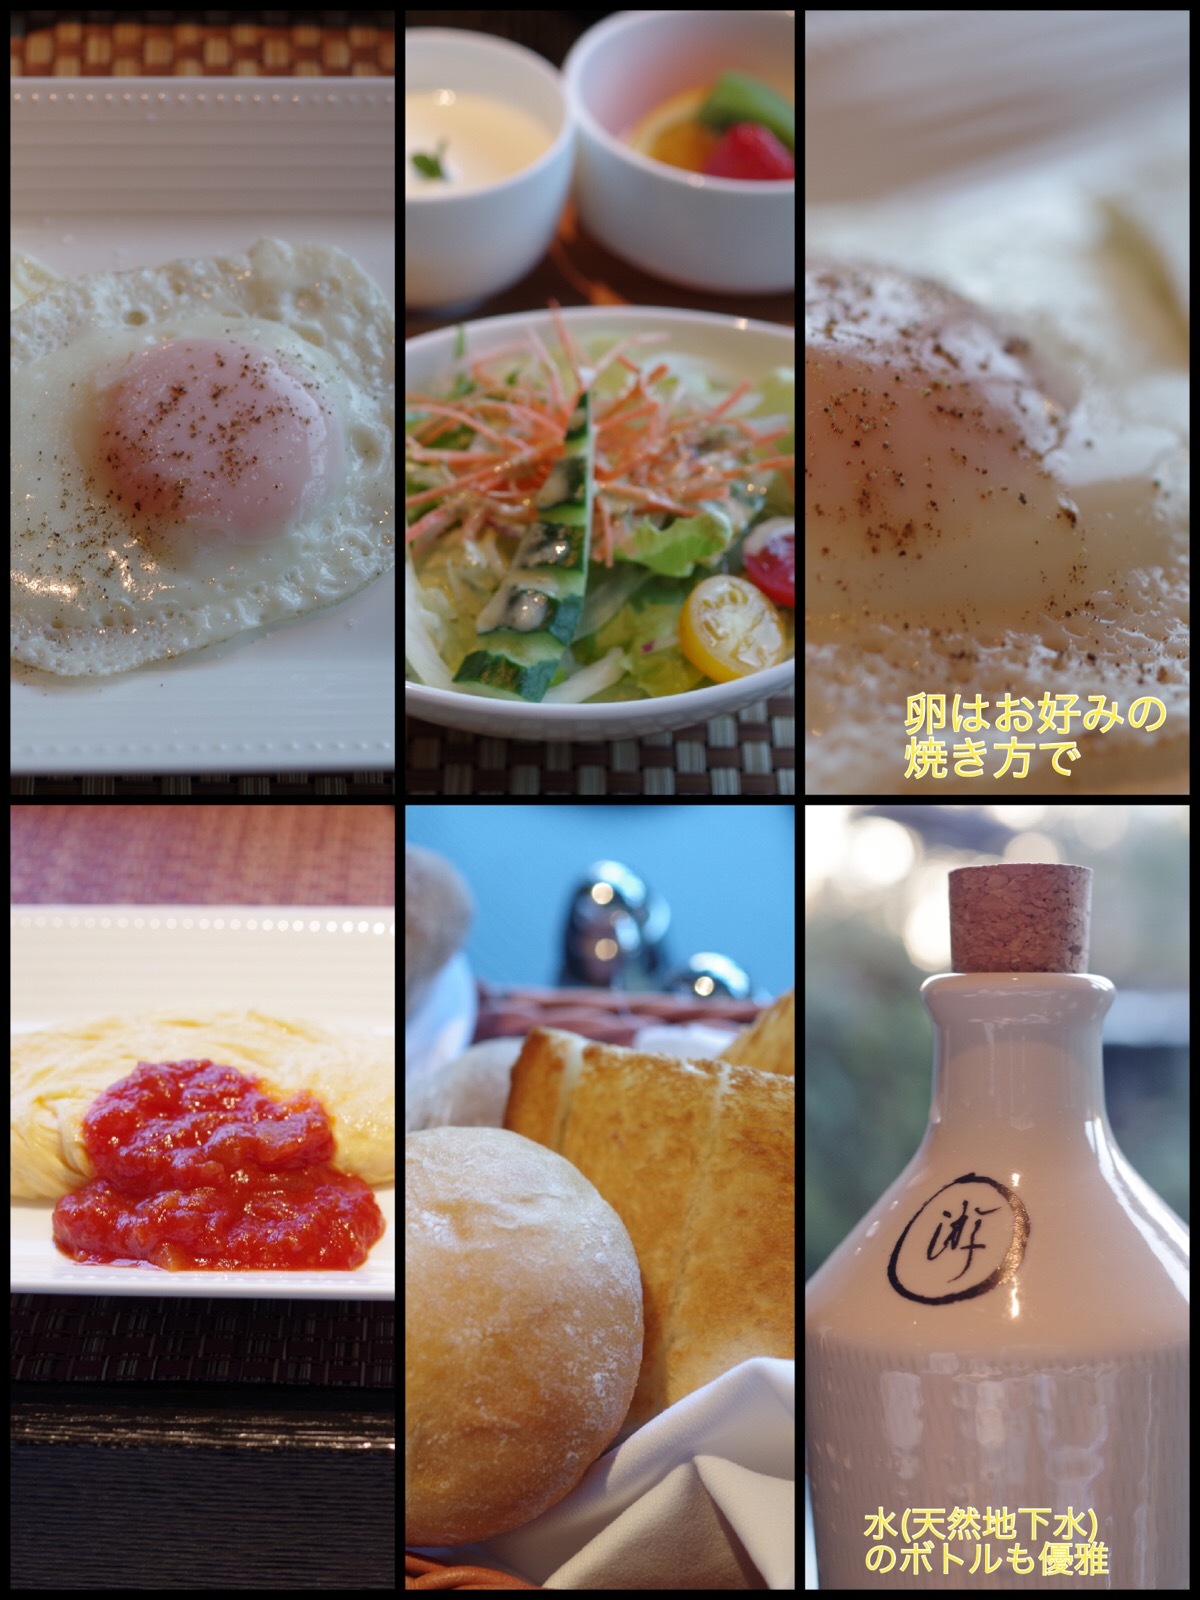 箱根ドライブ旅行 日本料理「一游(いちゆう)」